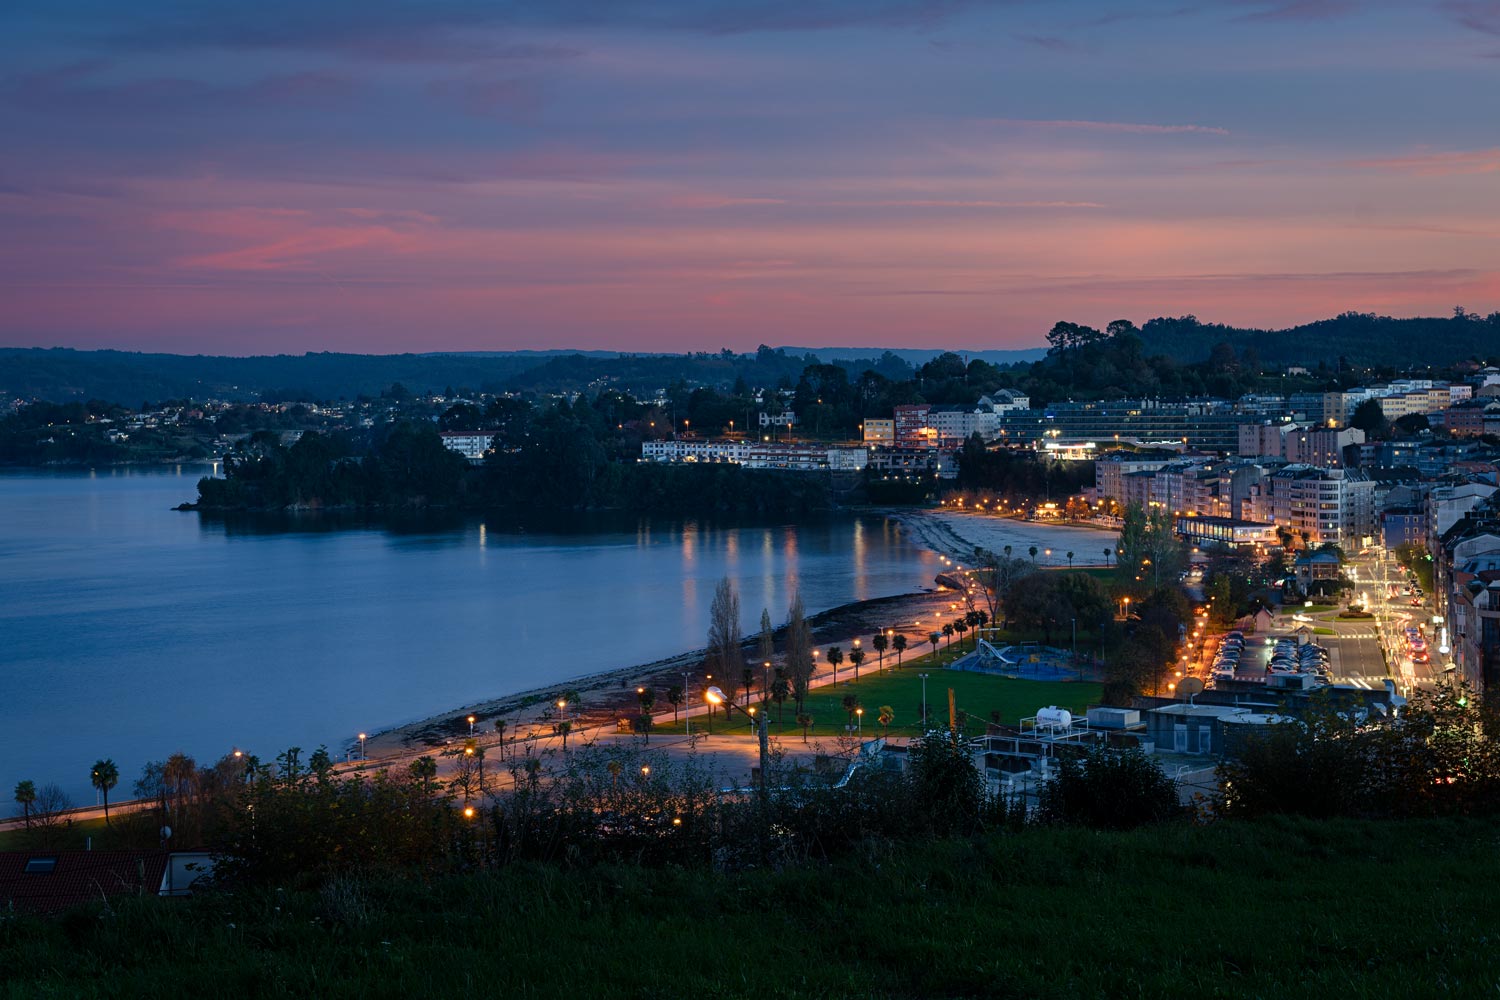 Finca en venta en Sada, A Coruña con vistas al atardecer sobre el mar, destacando la iluminación urbana y costera.